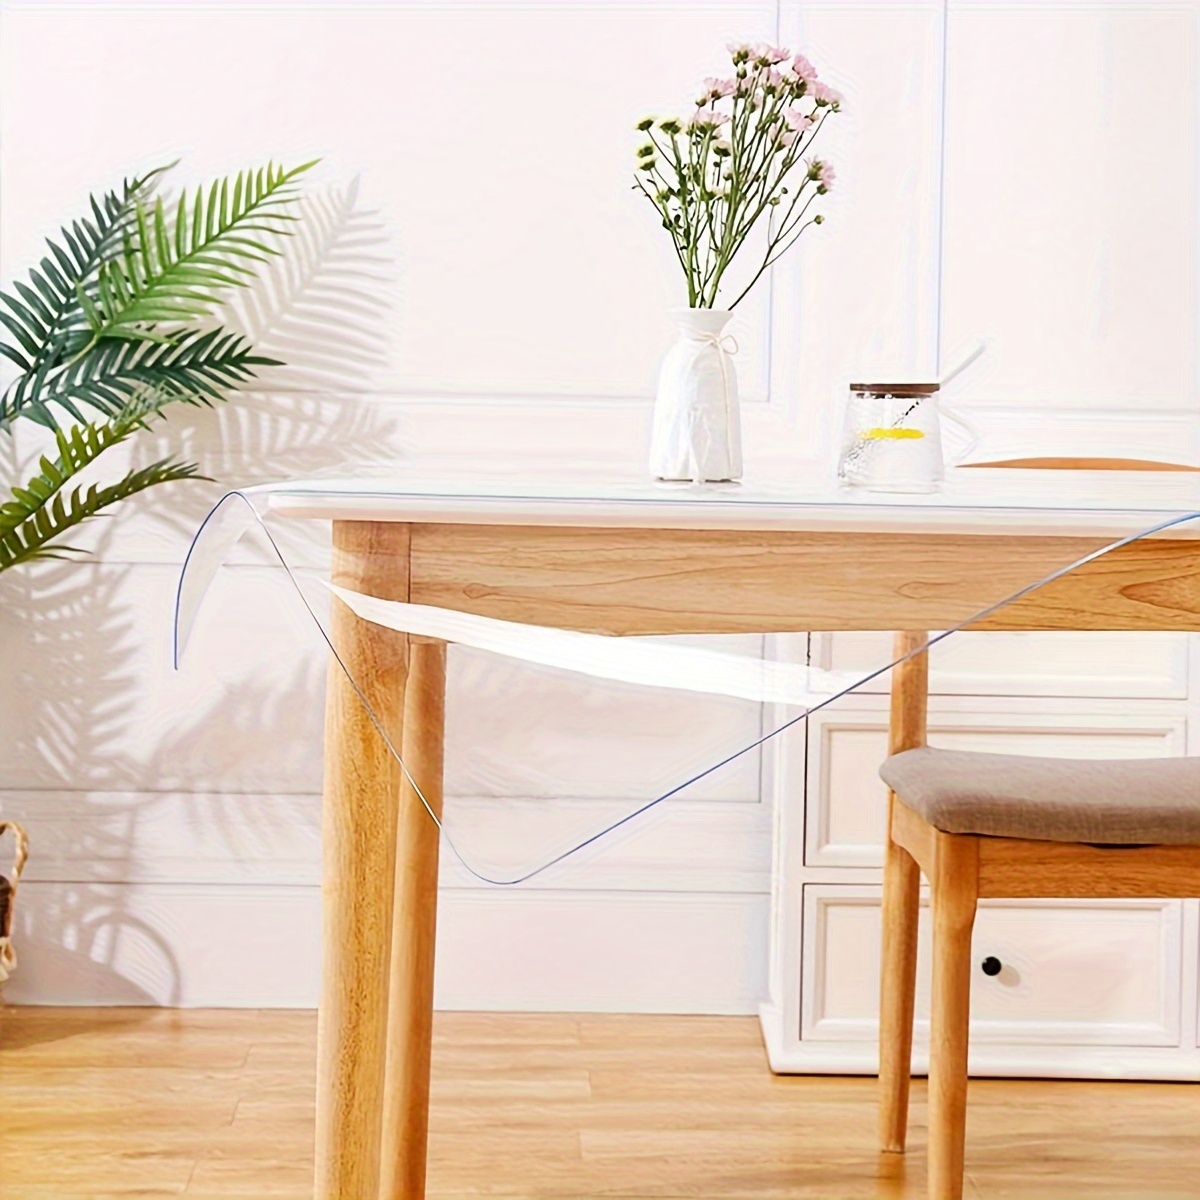 Hodmutst Protector de plástico transparente para mesa de comedor, tapete de  escritorio, muebles de madera, mesa auxiliar, mesa auxiliar, cubierta de